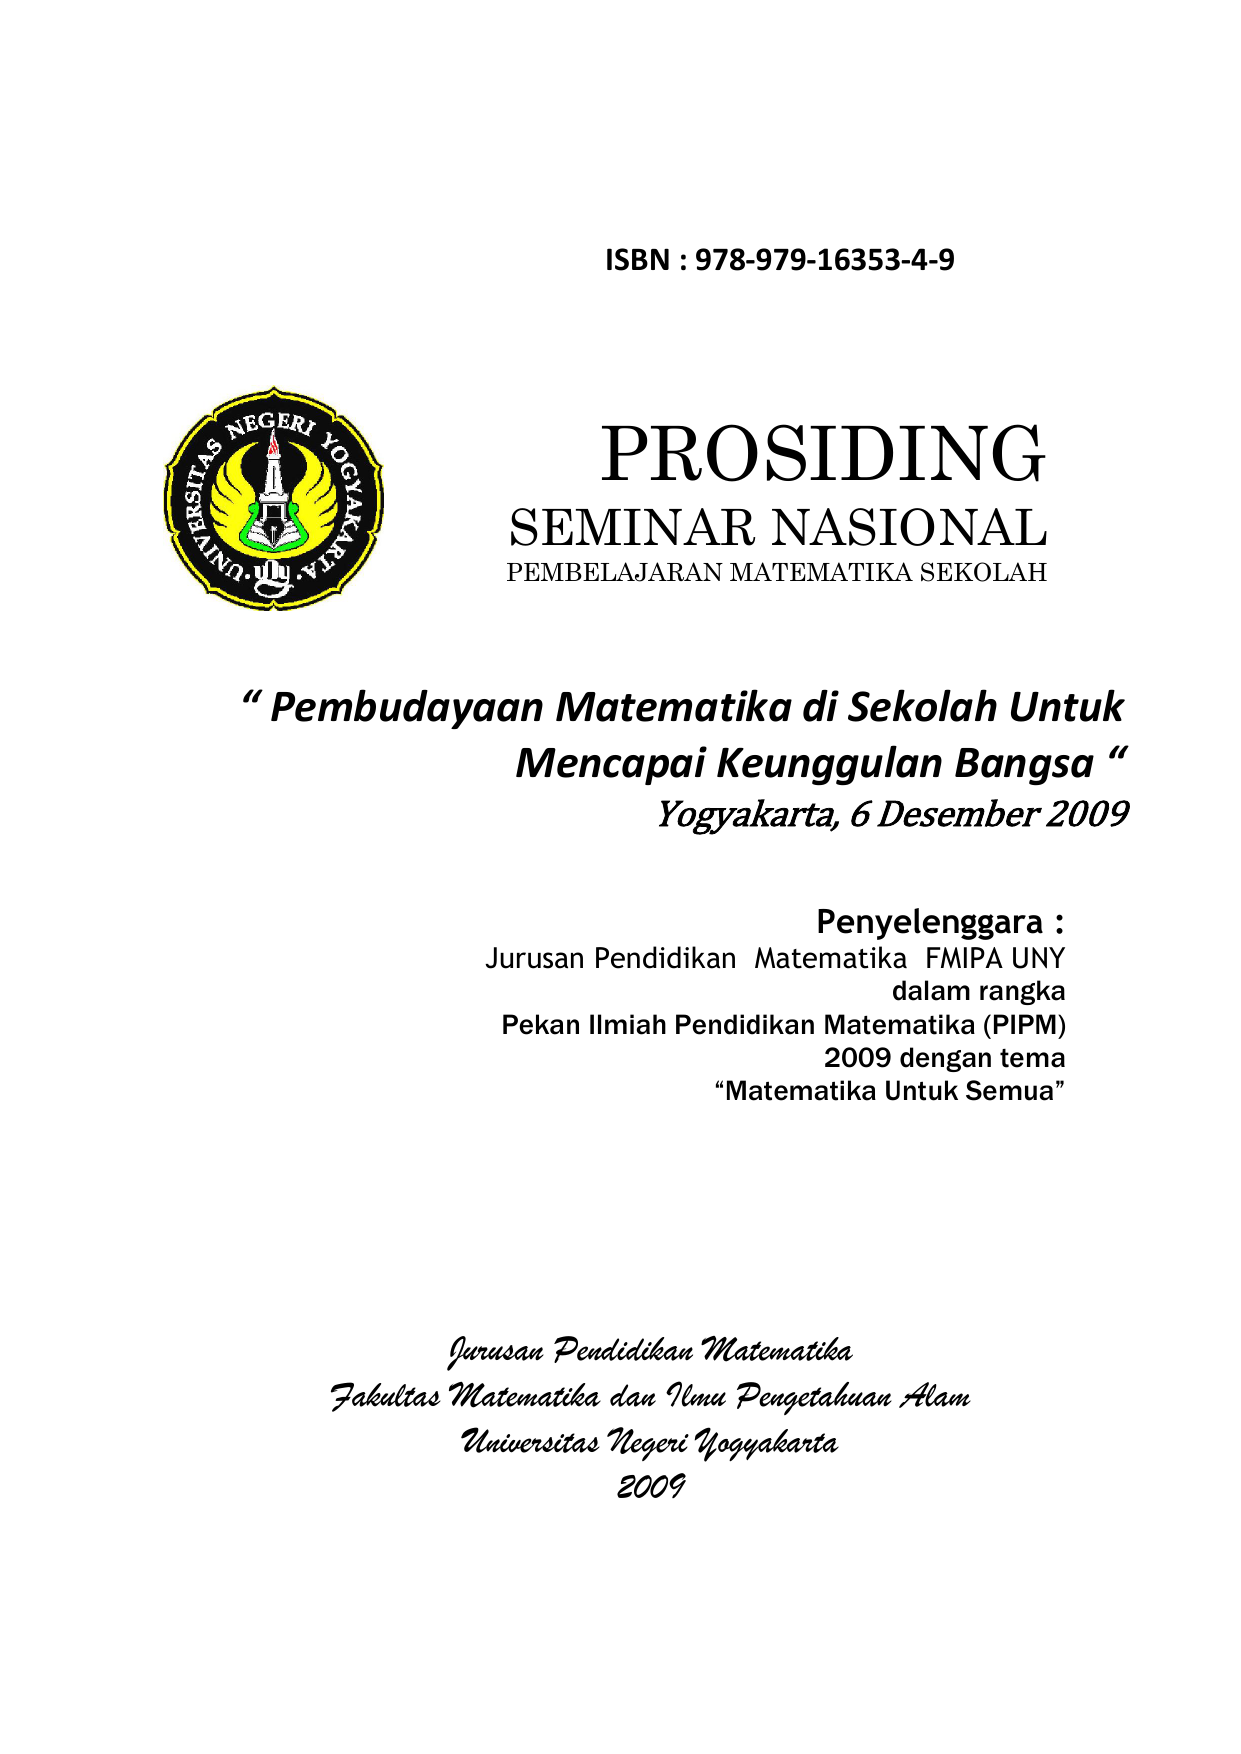 HALAMAN JUDUL ISBN 978 979 4 9 PROSIDING SEMINAR NASIONAL PEMBELAJARAN MATEMATIKA SEKOLAH “ Pembudayaan Matematika di Sekolah Untuk Mencapai